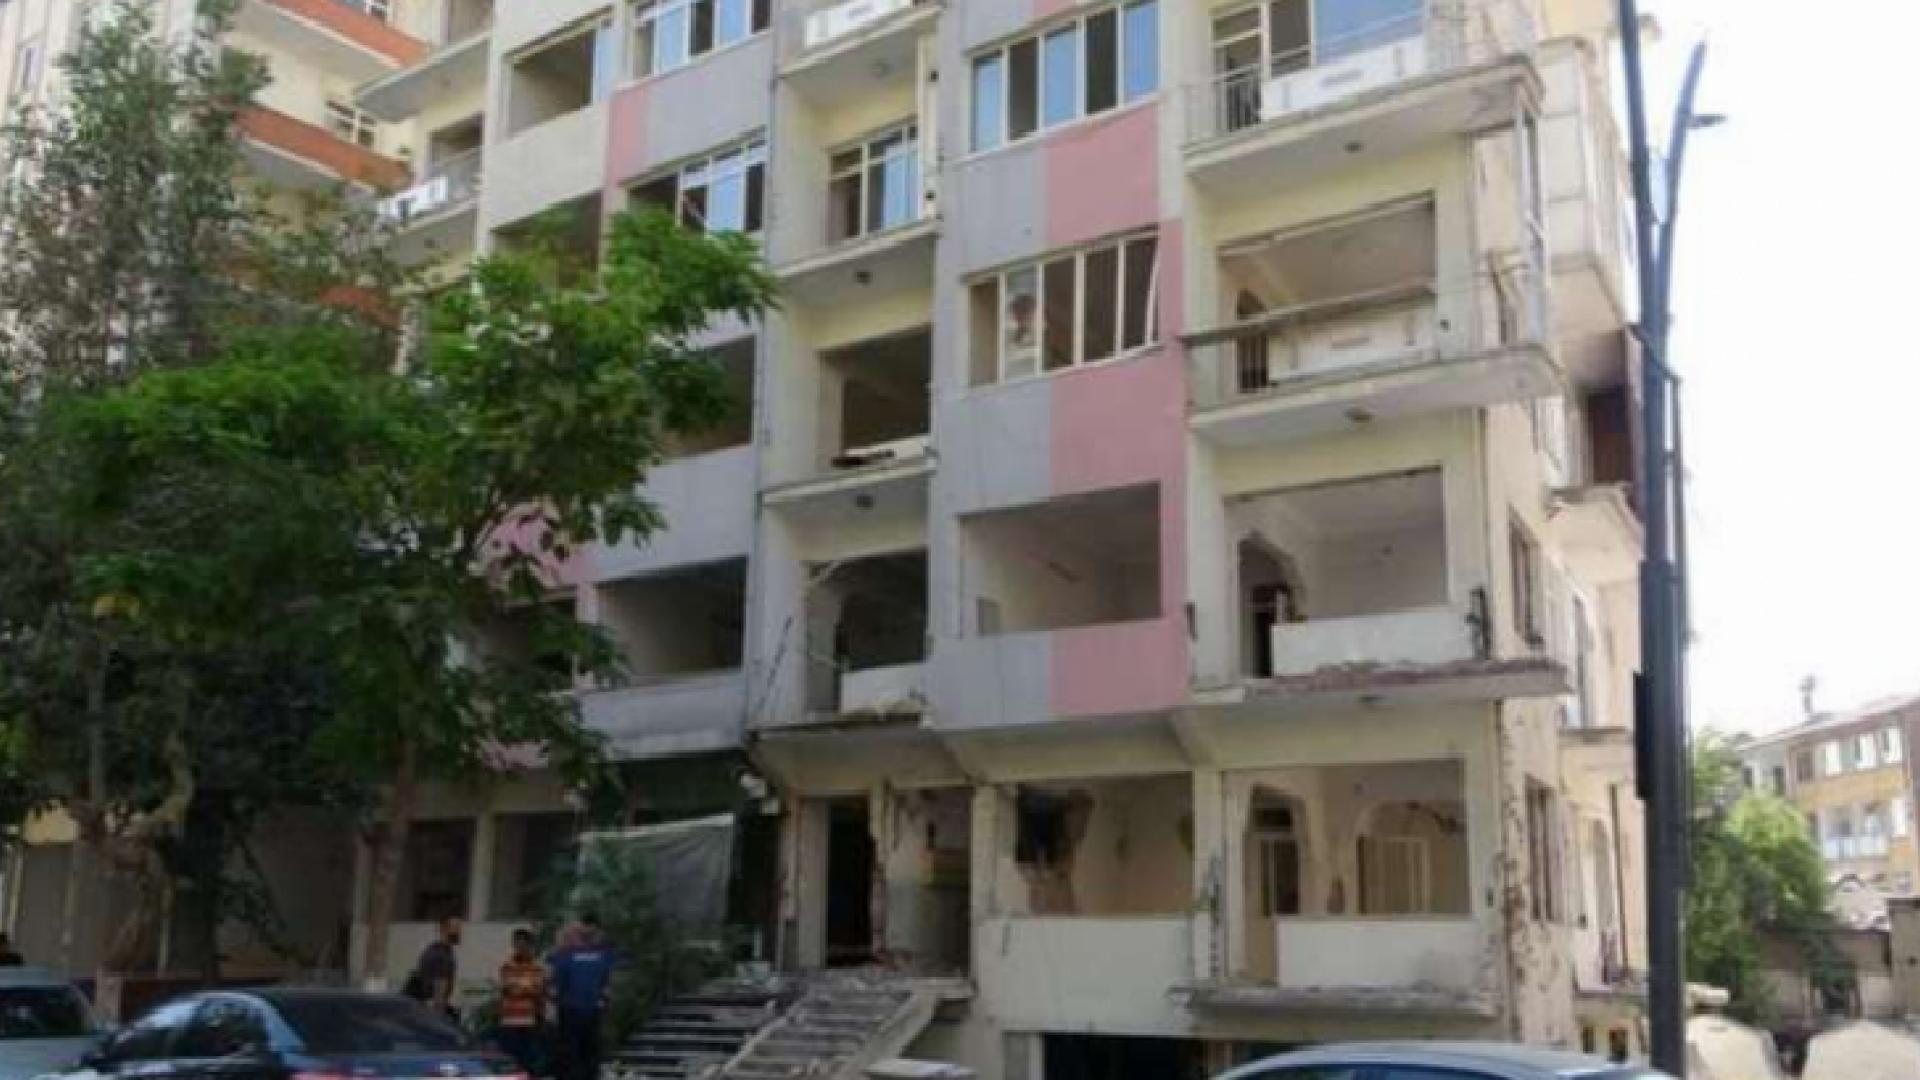 Malatya'da iş cinayeti: Asansörü sökmeye çalışan Ahmet Abinikli 4. kattan düşererk yaşamını kaybetti 3